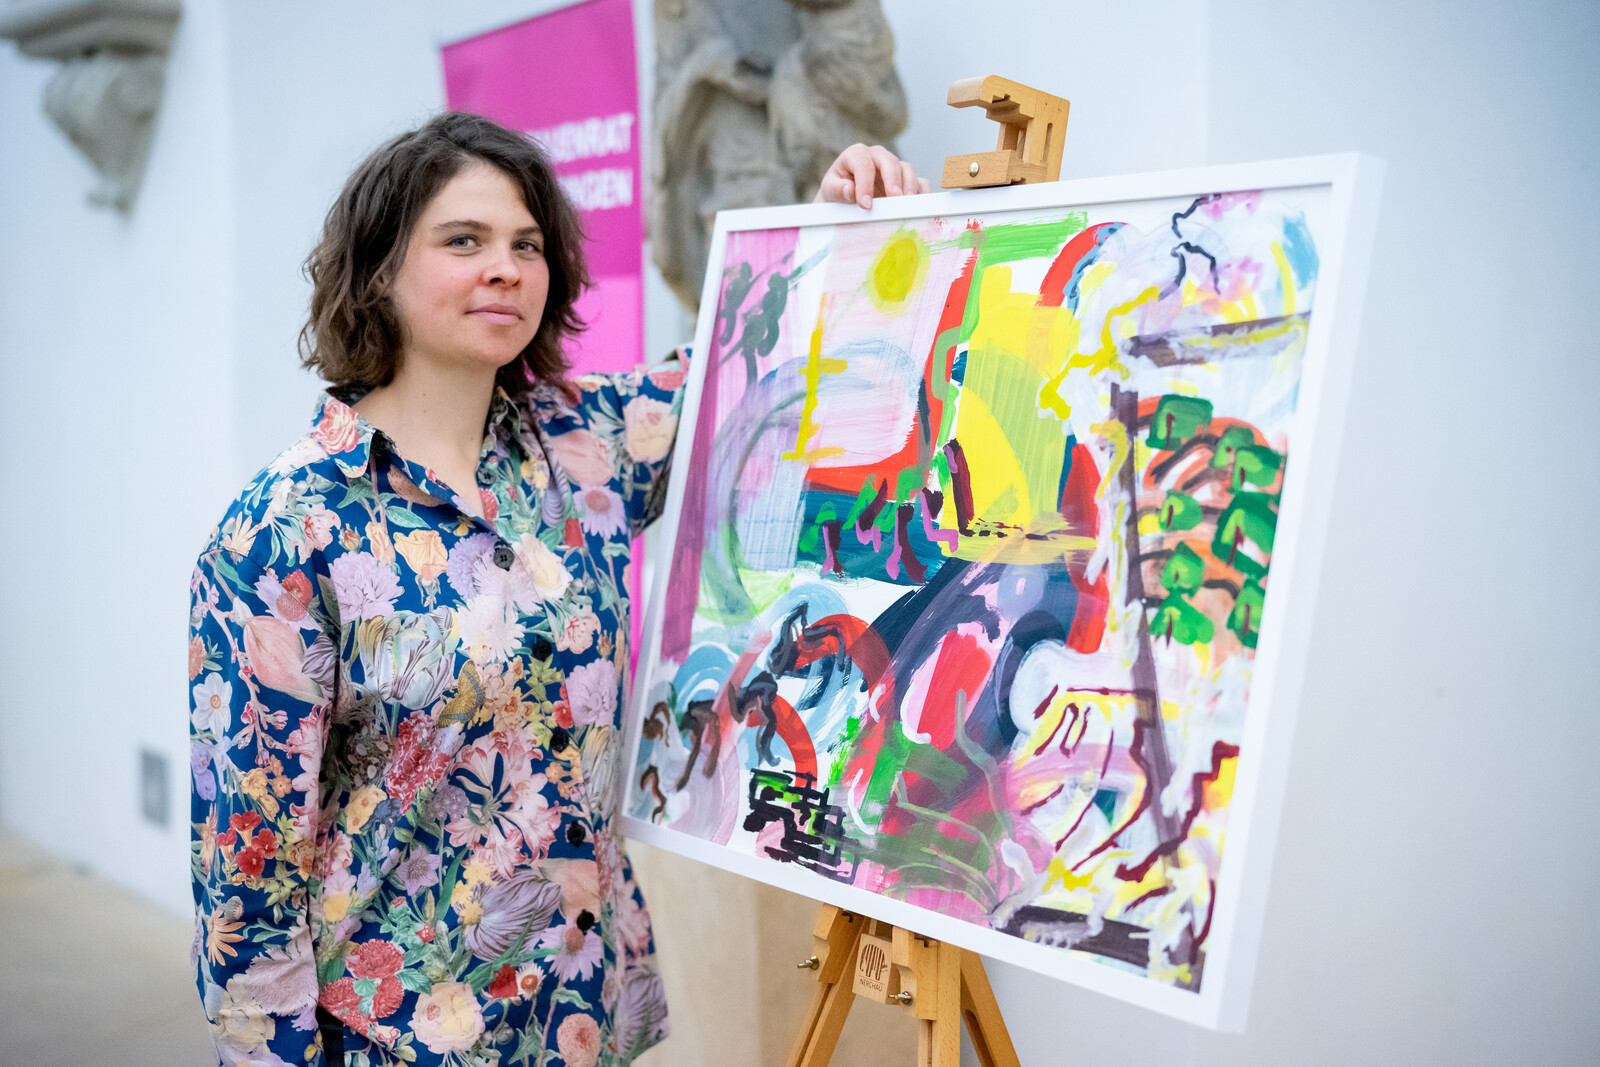 KAIROS-Preisverleihung, Künstlerin Martha Sengteller mit ihrem Kunstwerk "Früchte tragen", Wolfram Schubert